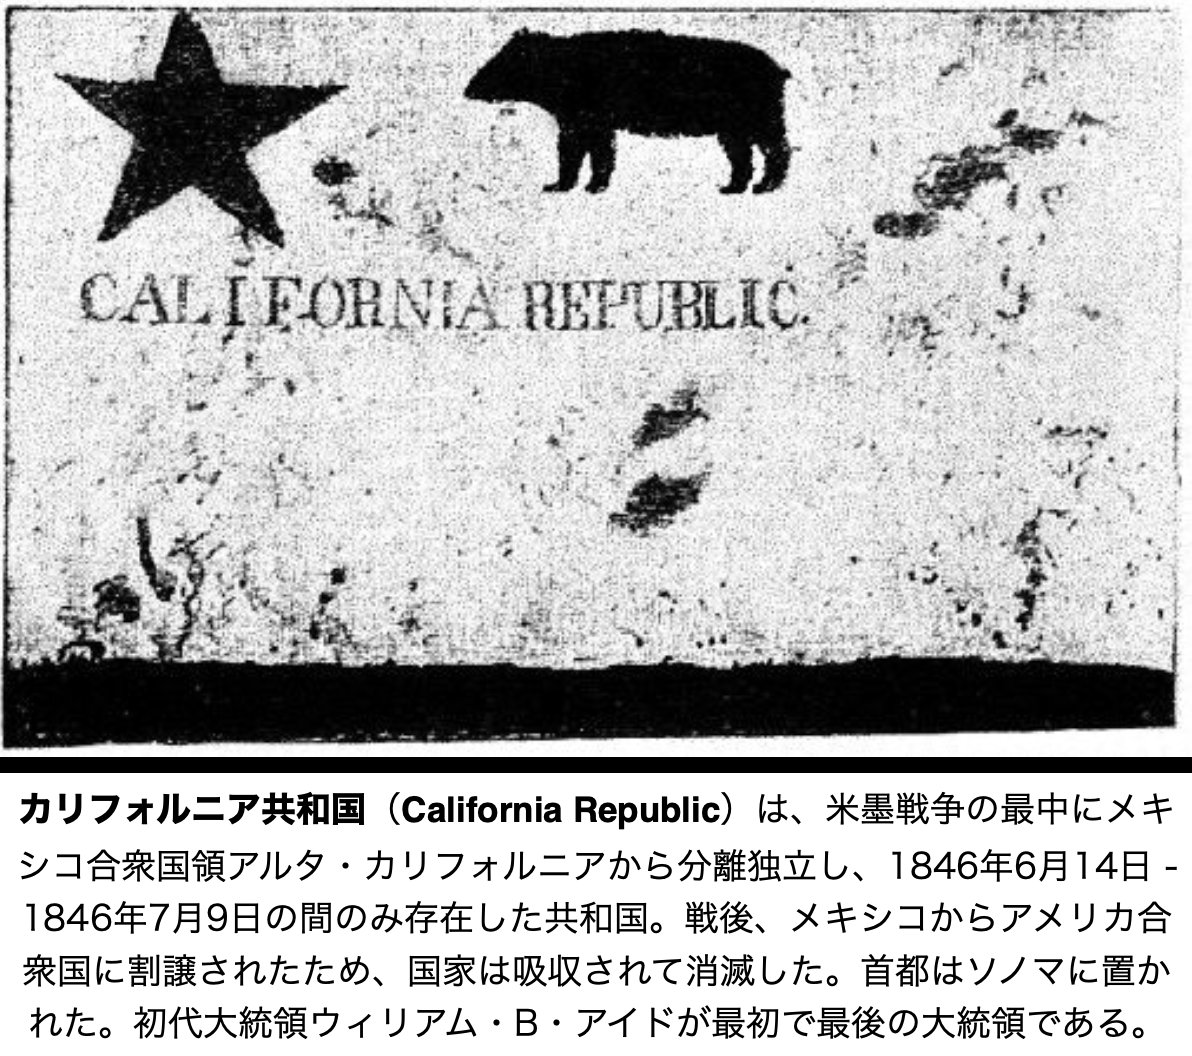 【カリフォルニア共和国（California Republic）】
国旗 : 実物